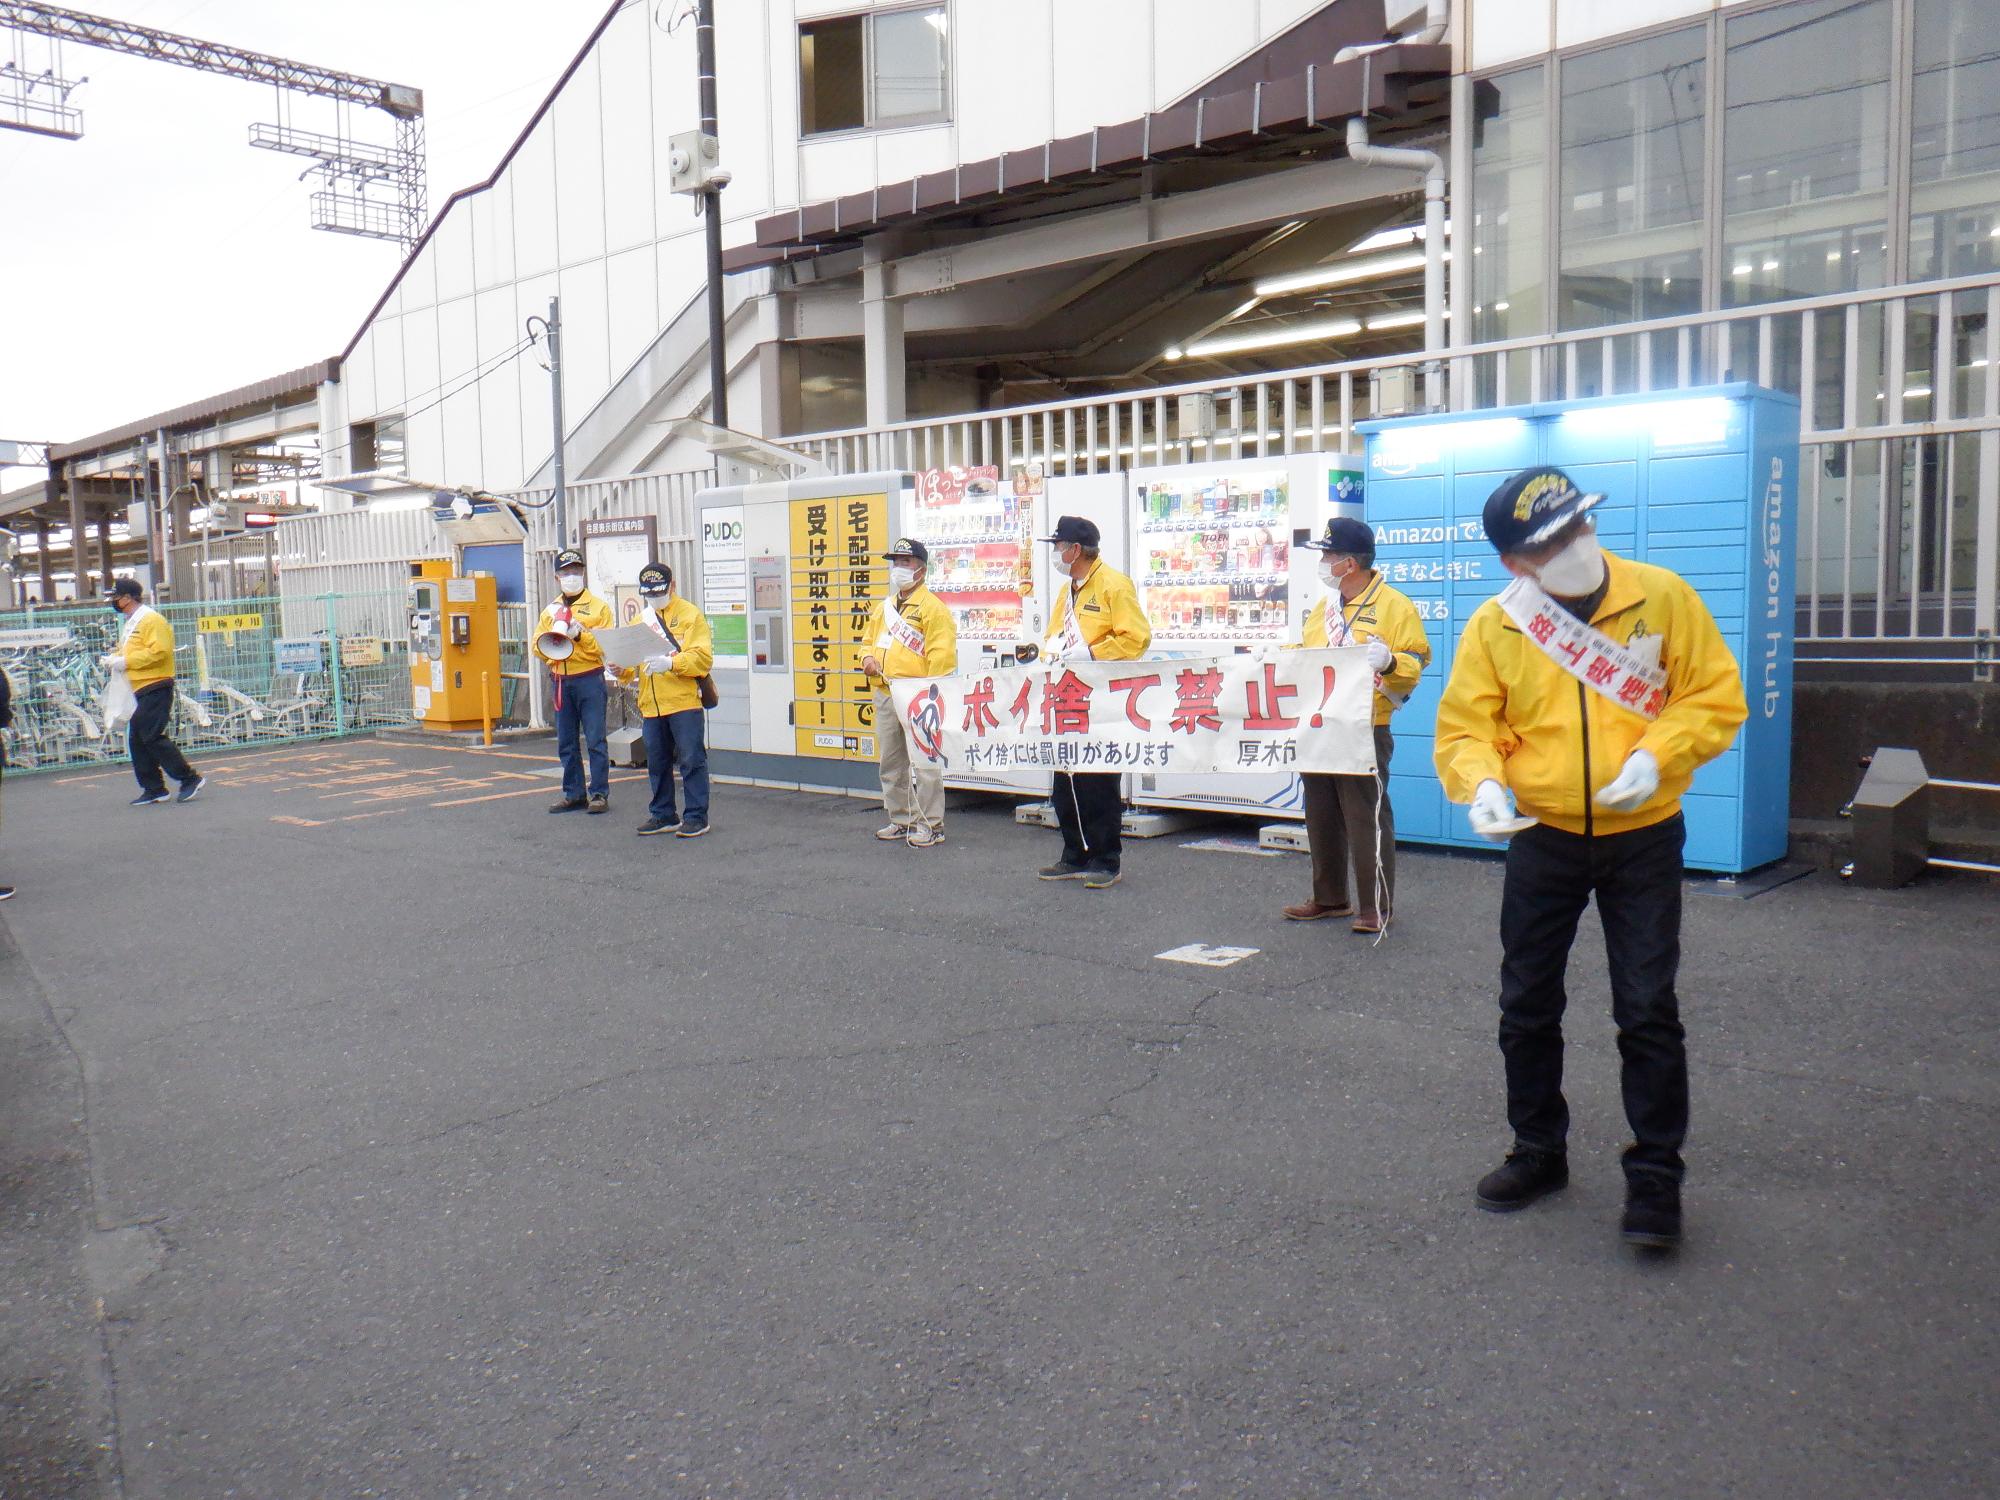 第6回路上喫煙・ポイ捨て防止キャンペーンの愛甲石田駅南口での啓発活動をする写真